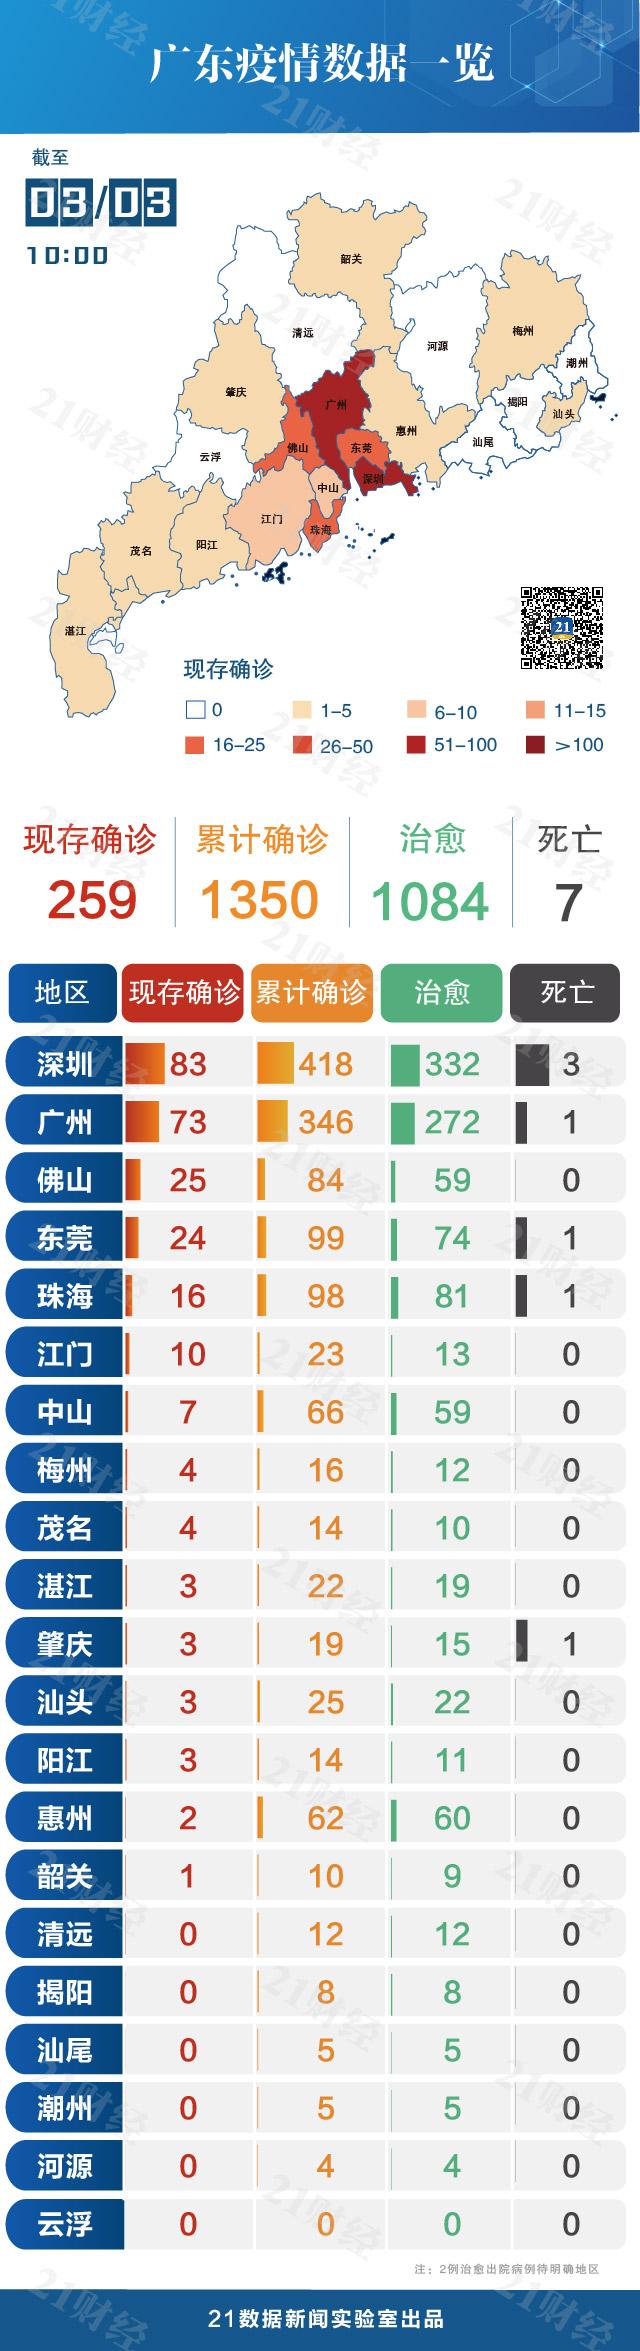 零新增 5城清零 1城未感染 50秒速览广东疫情是如何演变的 21财经